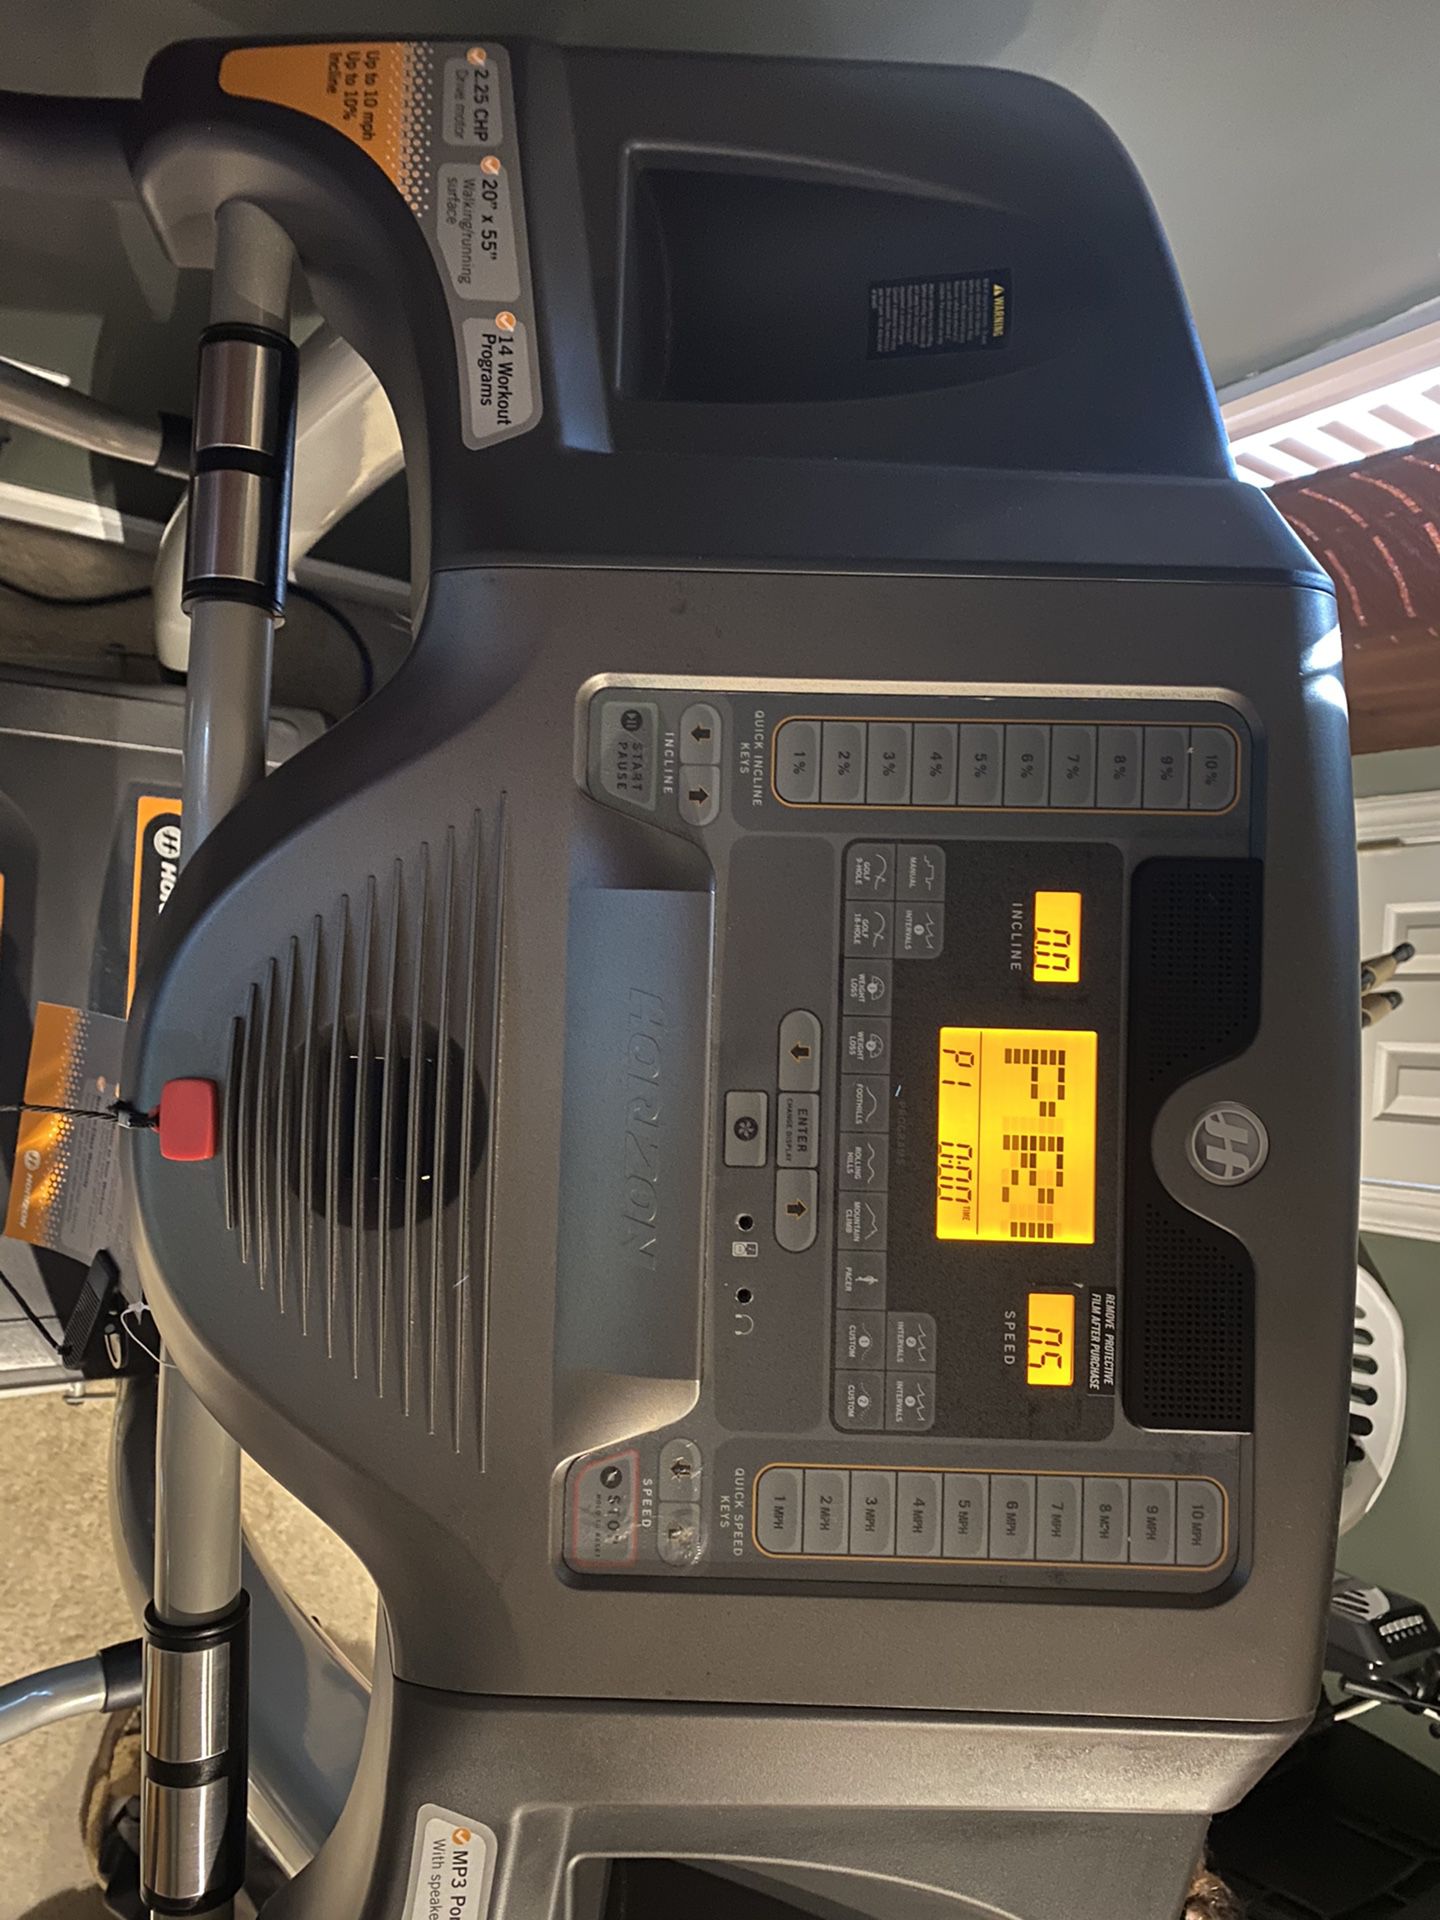 Horizon Treadmill T82